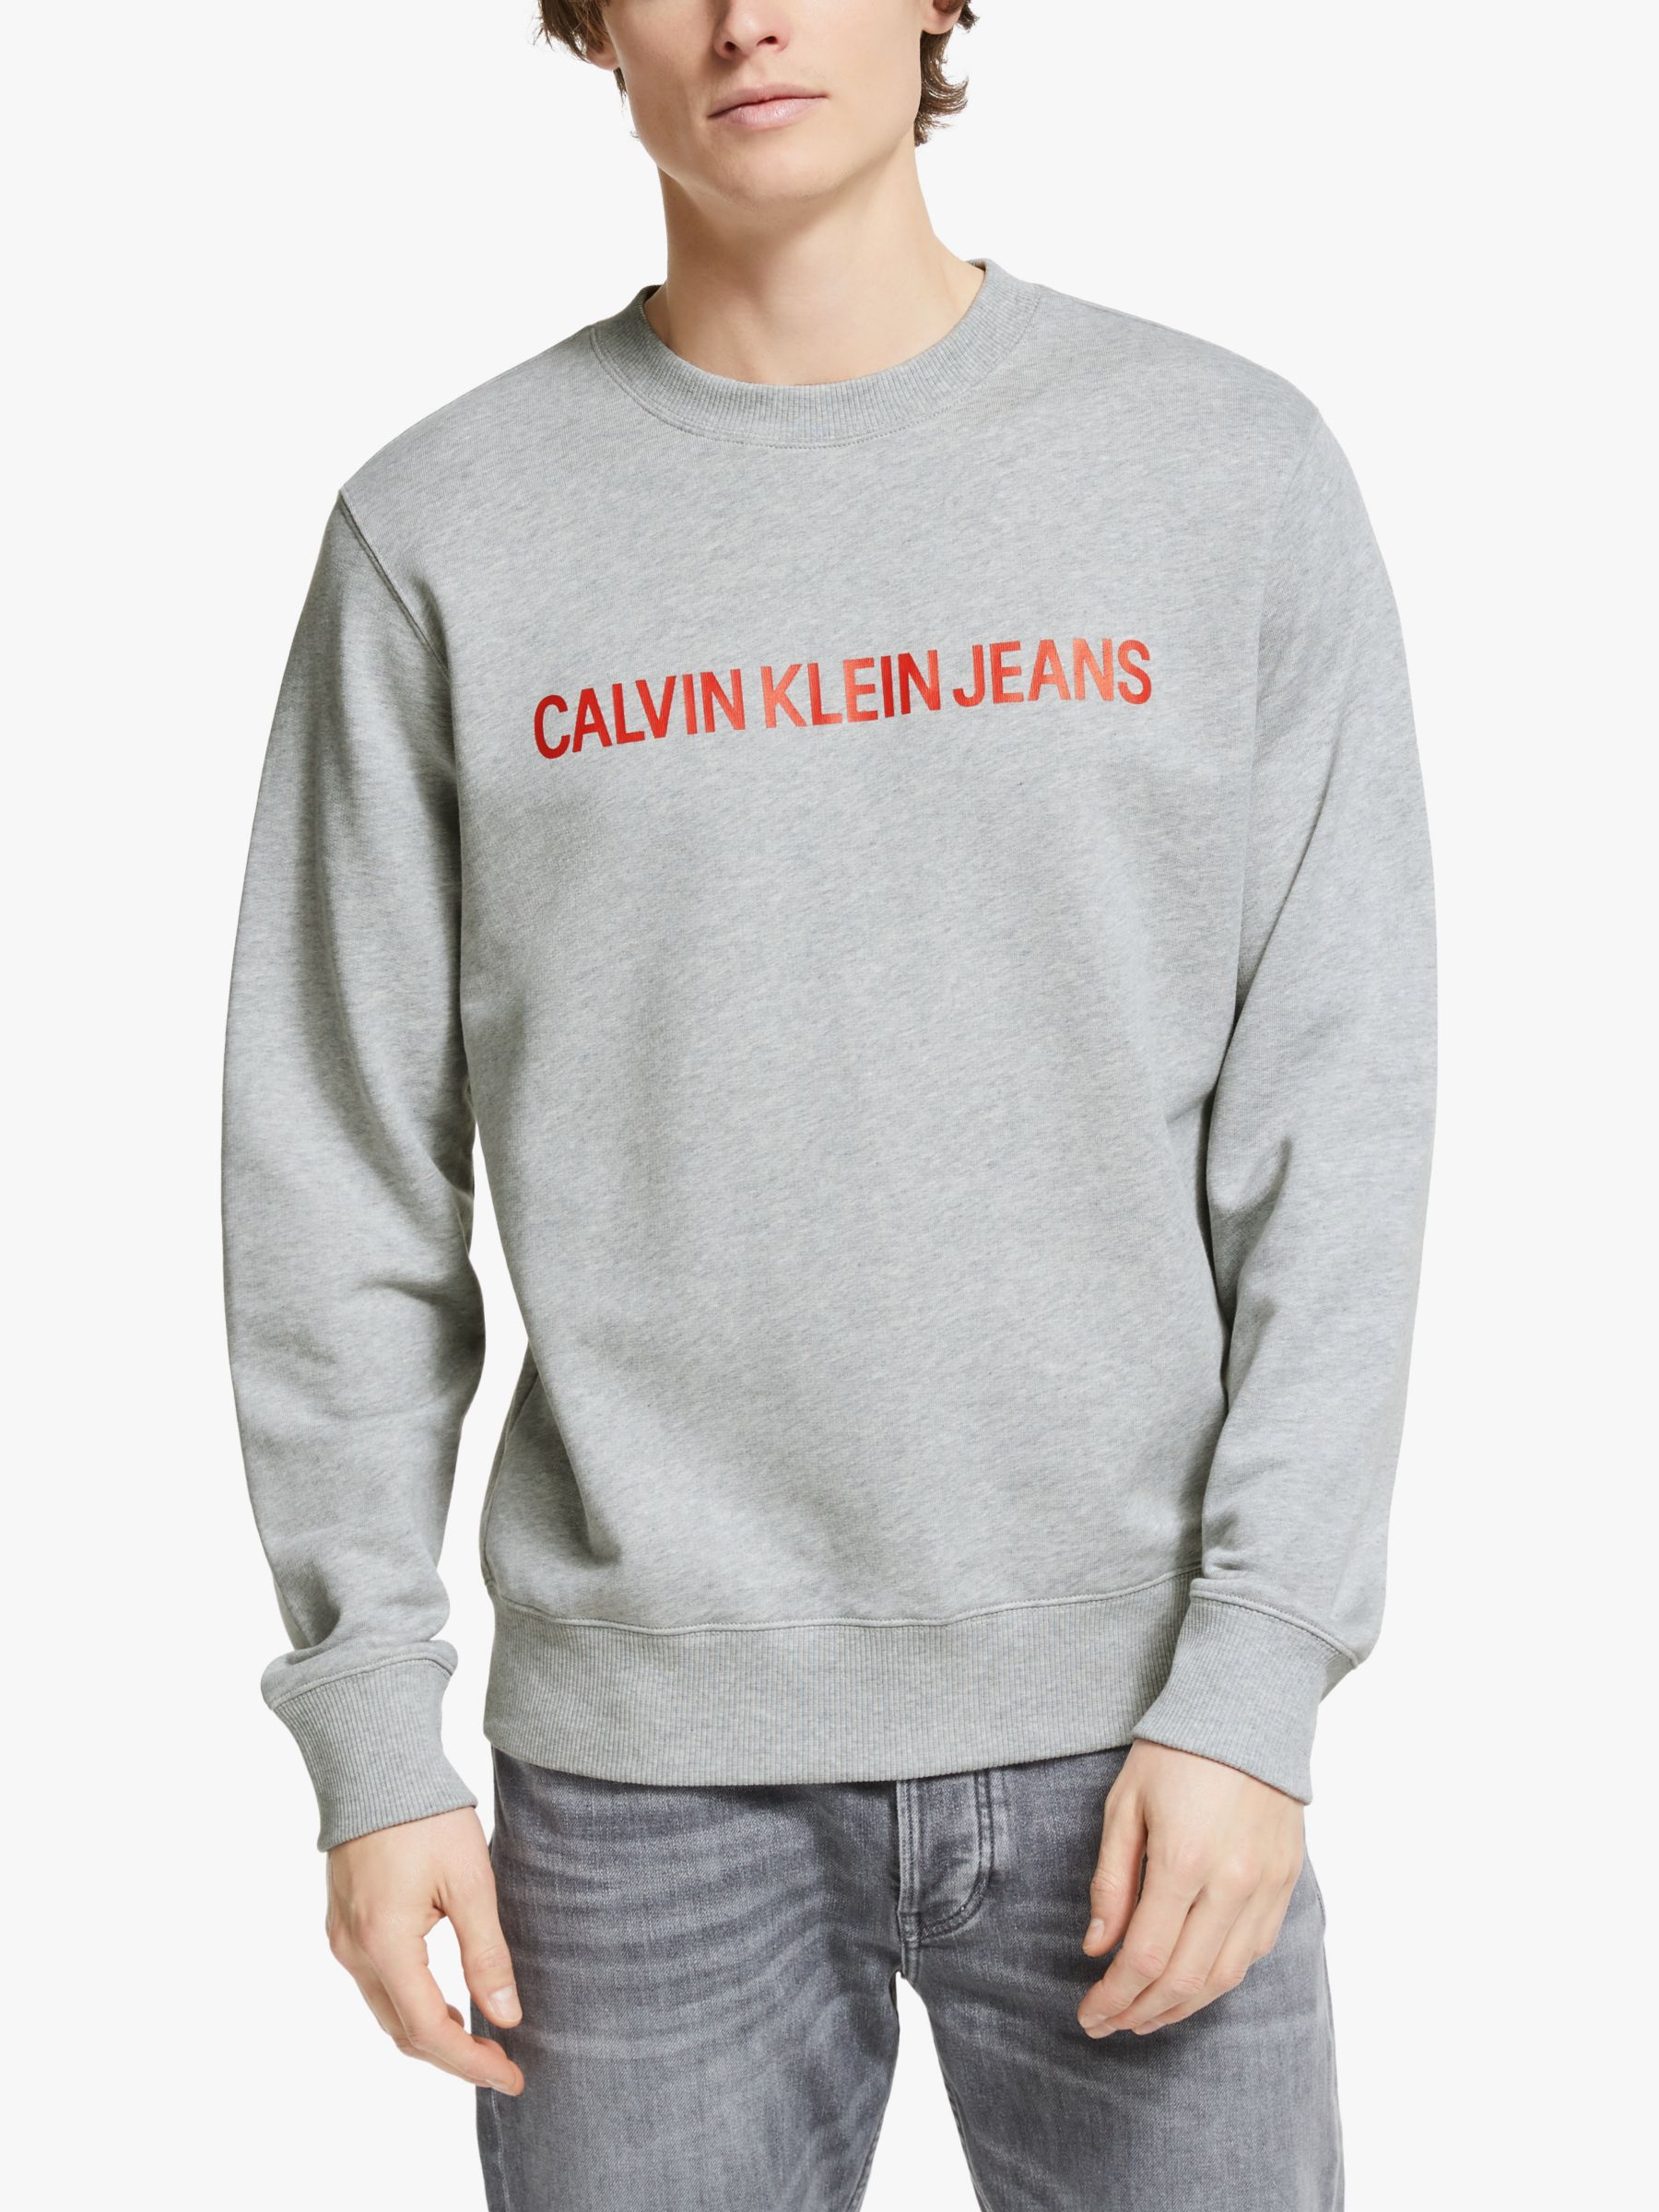 calvin klein jeans grey jumper